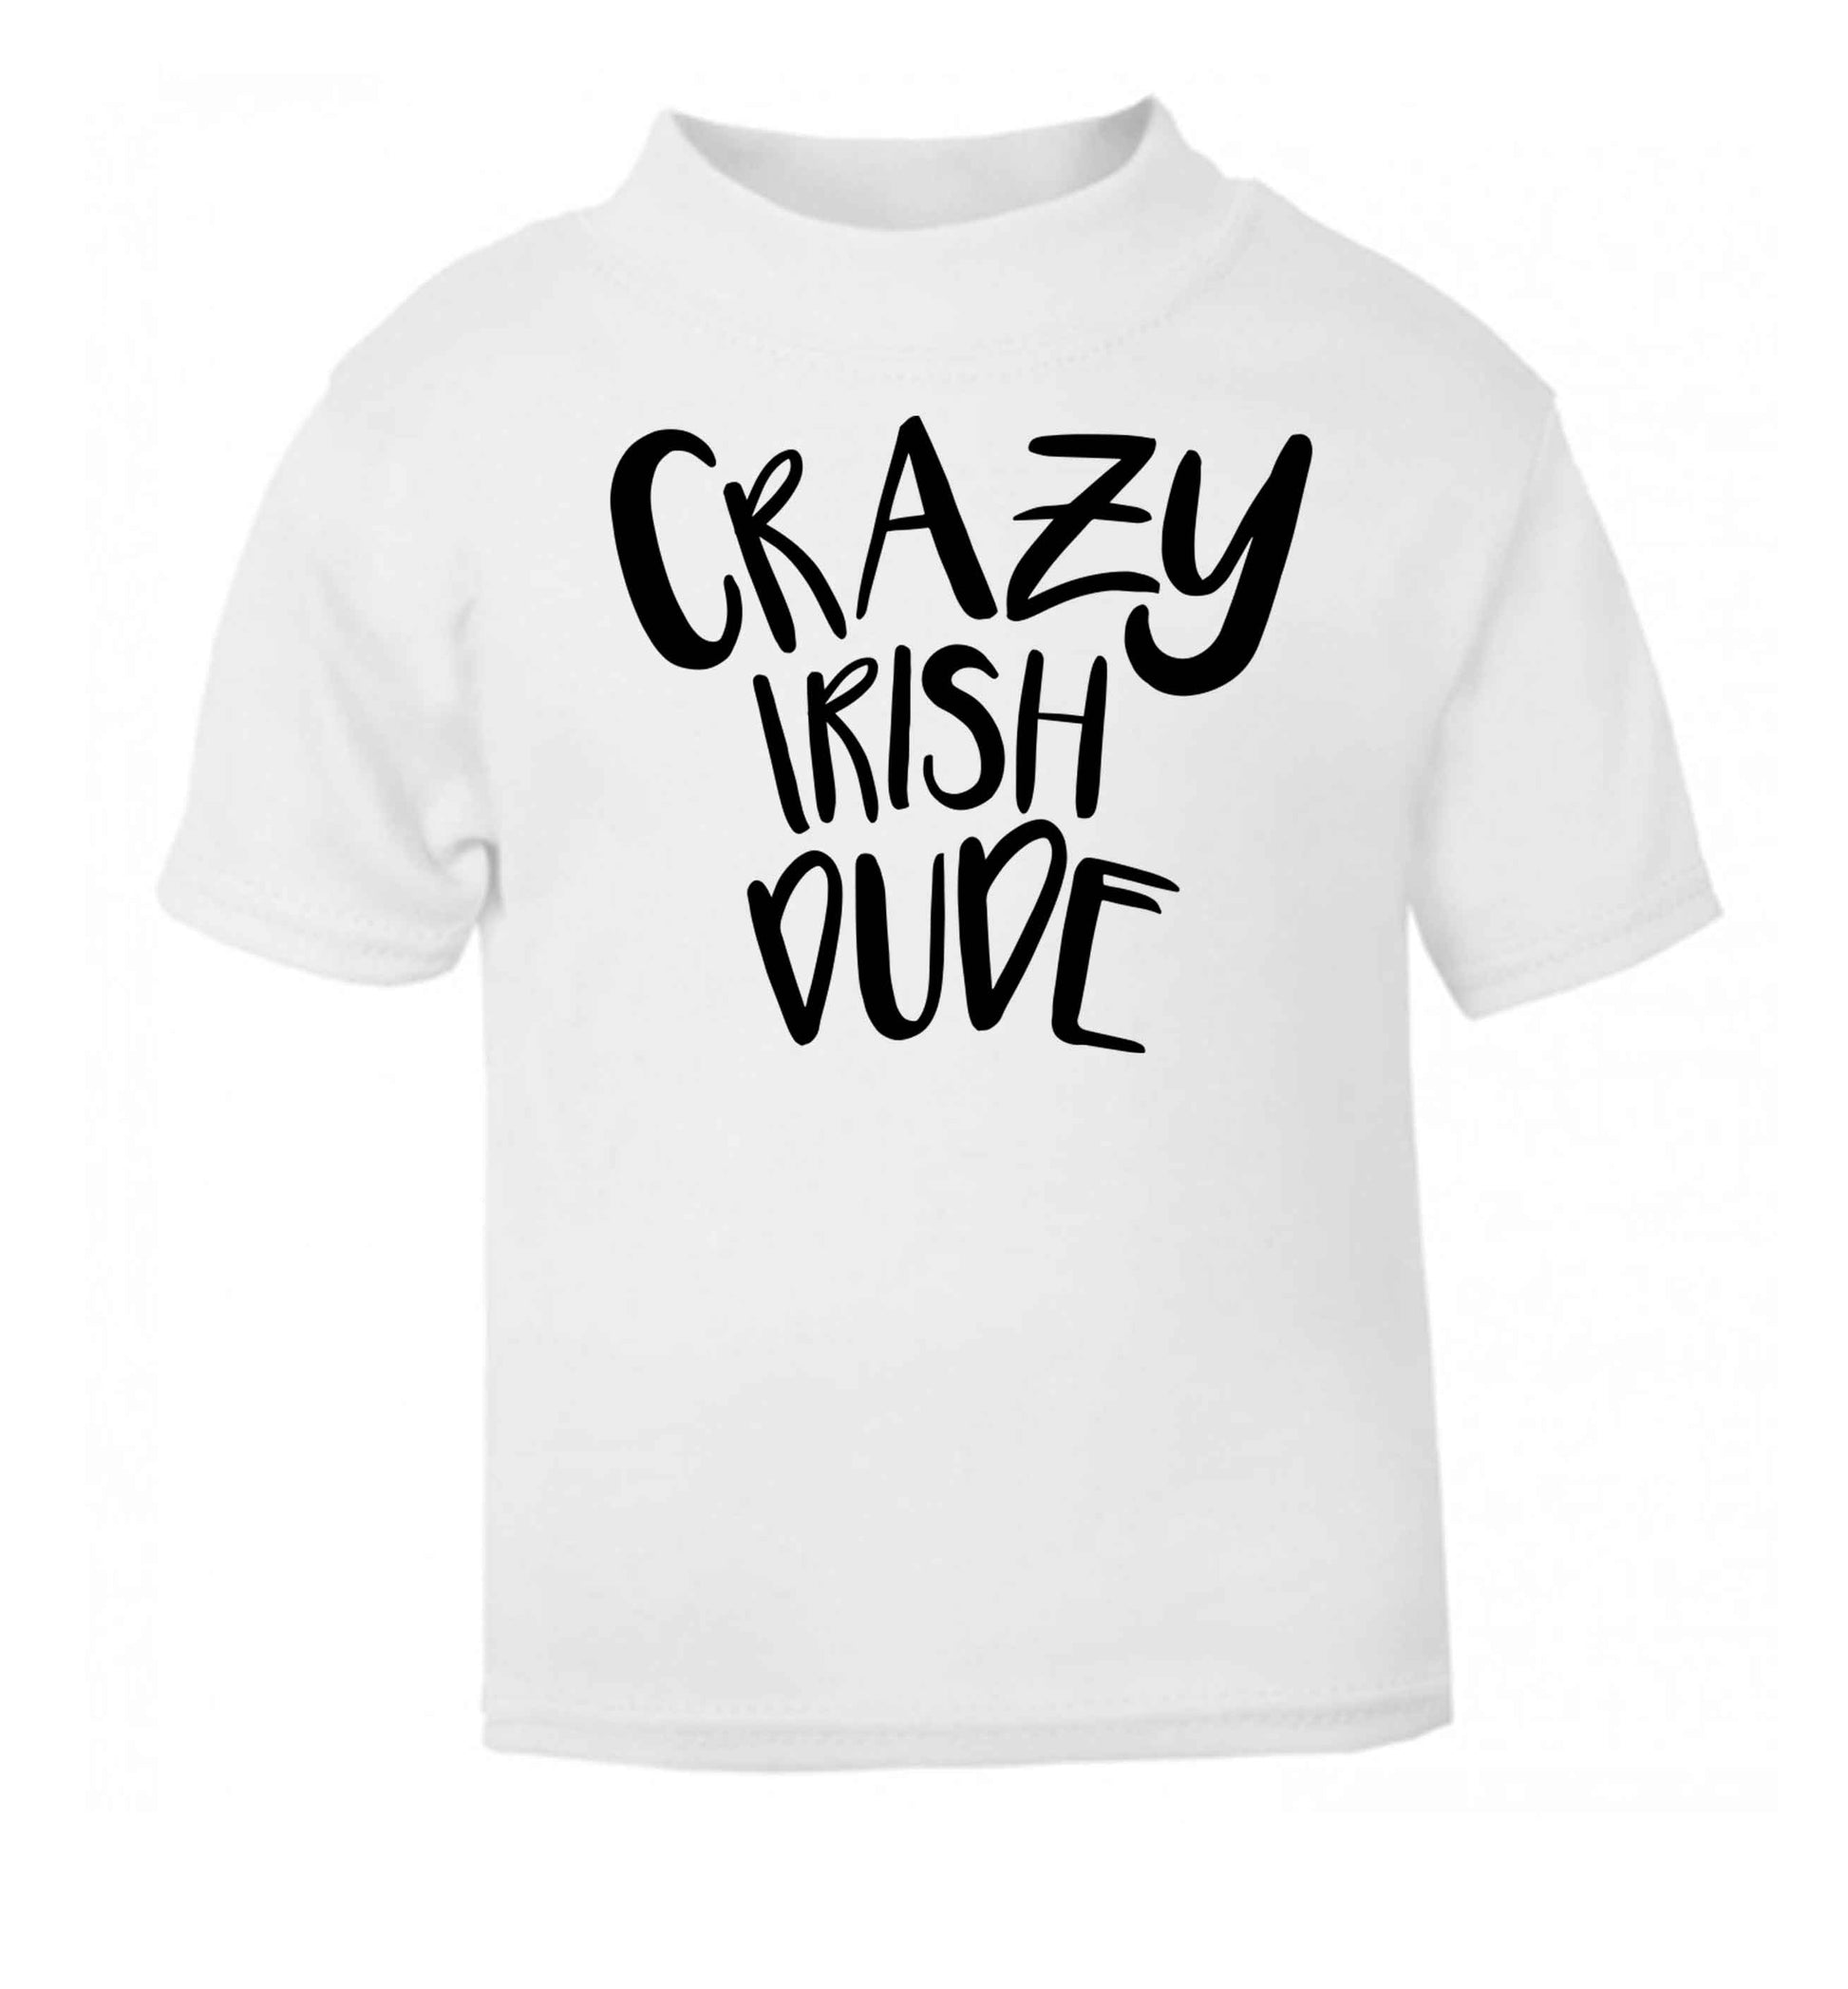 Crazy Irish dude white baby toddler Tshirt 2 Years